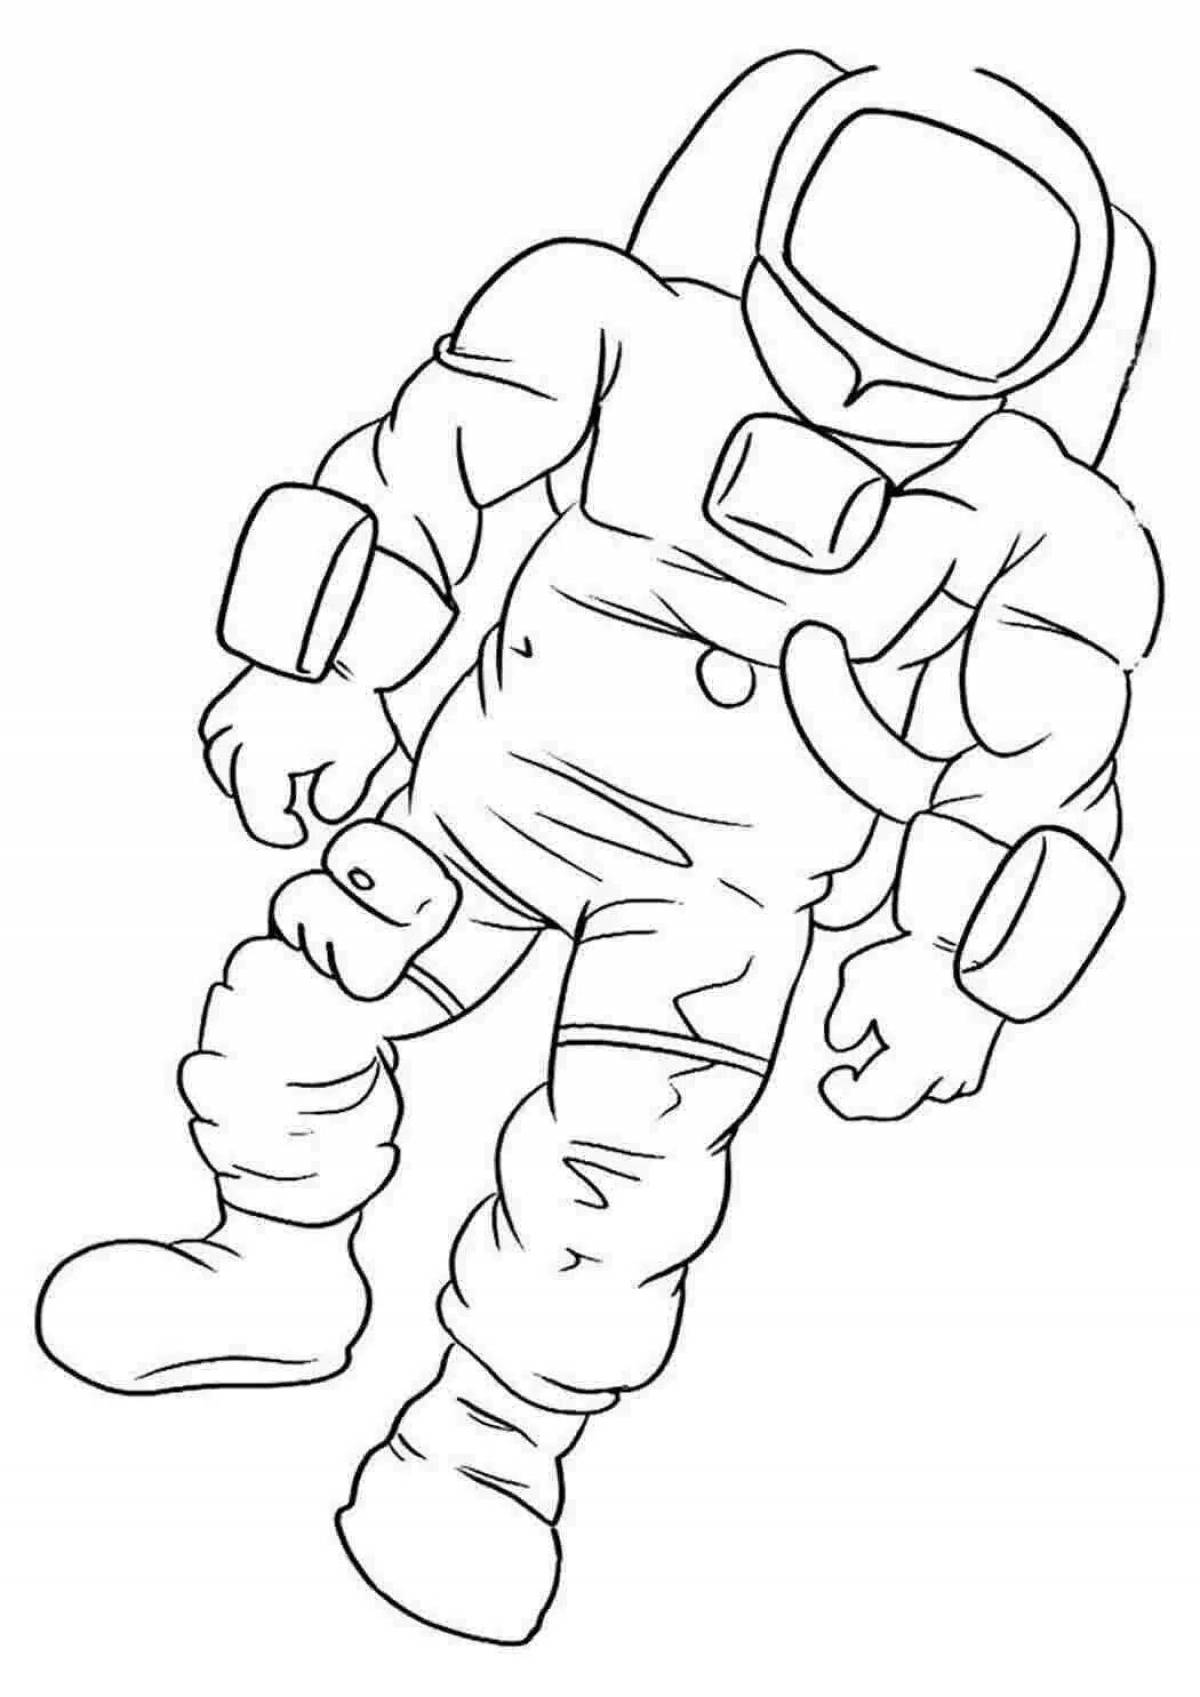 Нарисовать космонавта карандашом. Космонавт раскраска. Космонавт раскраска для детей. Раскраска Космонавта в скафандре для детей. Космонавт рисунок.